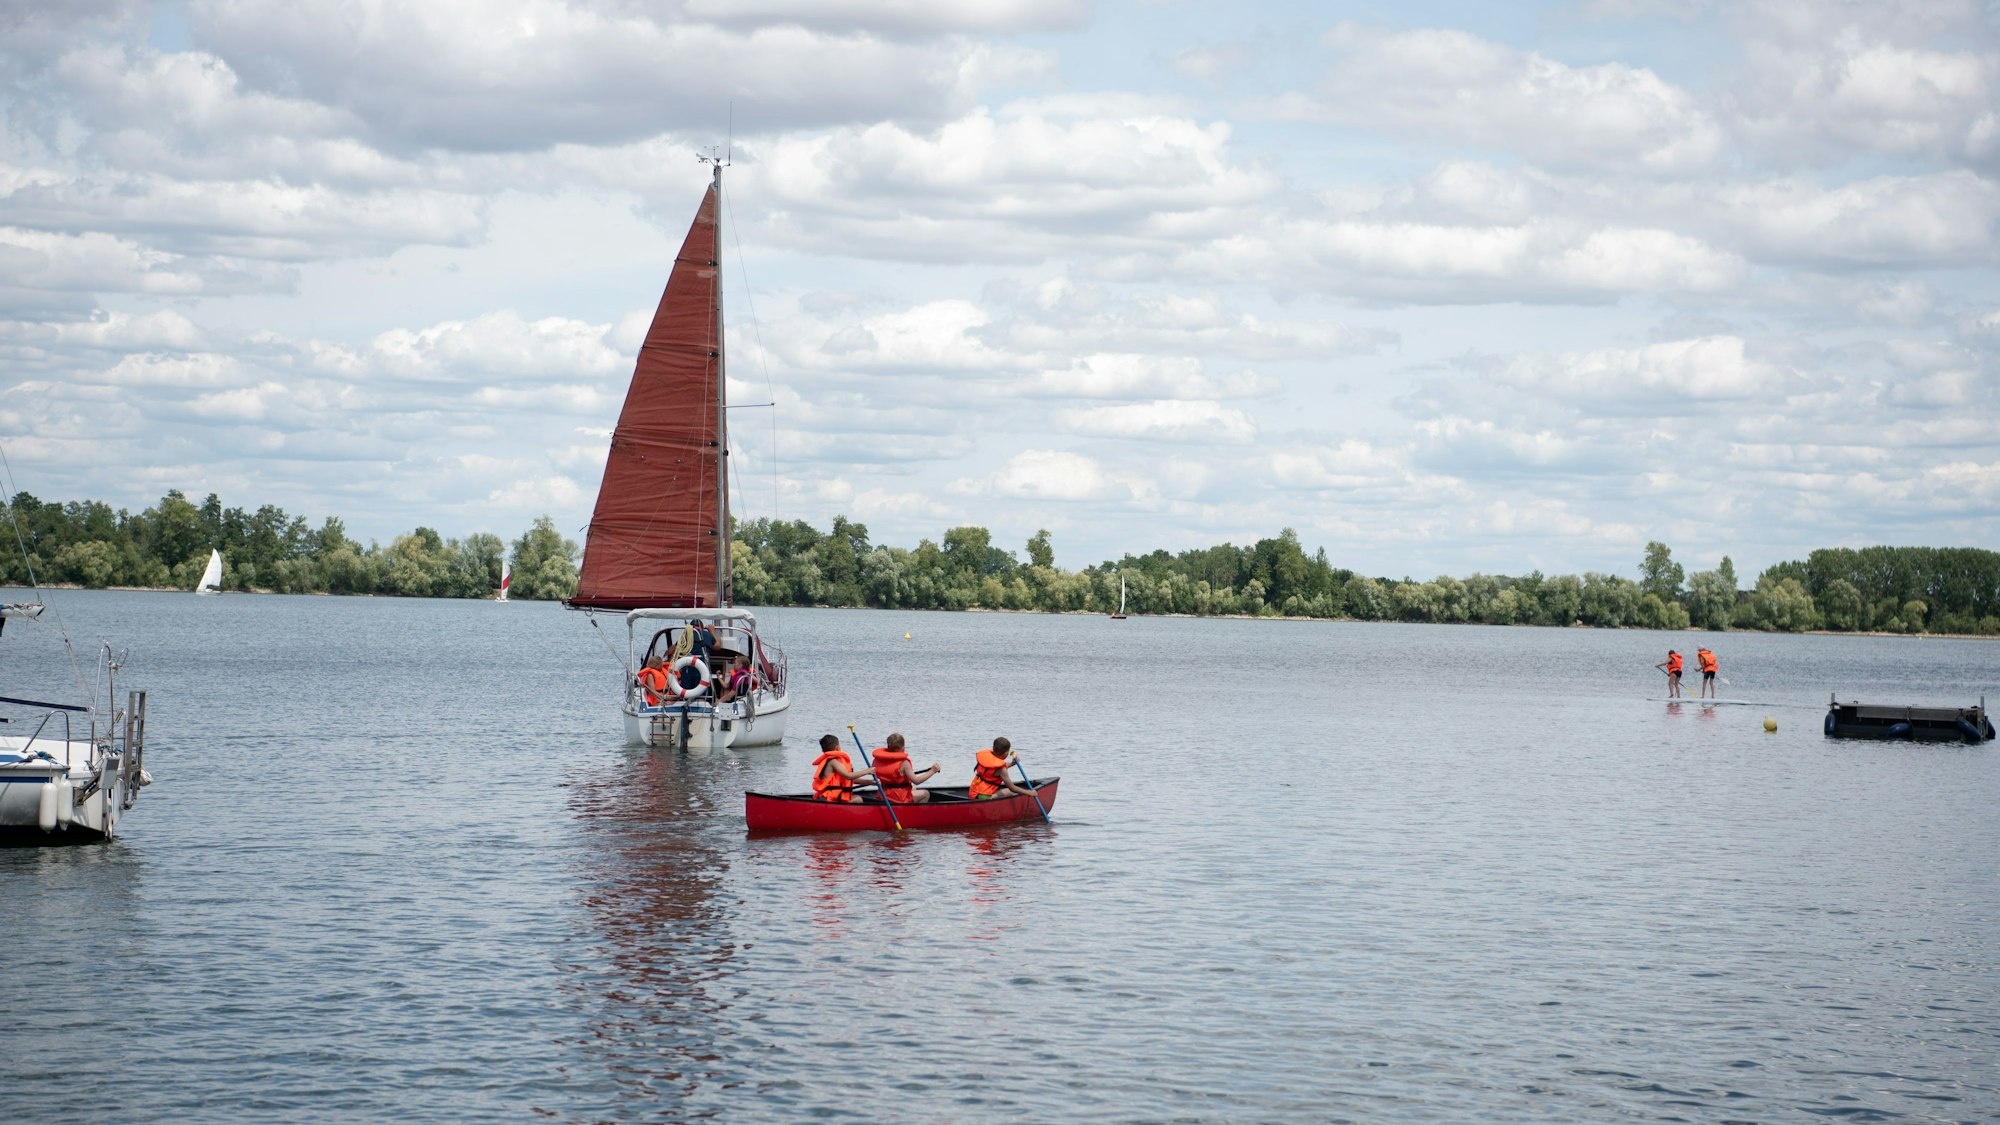 Kinder paddeln in einem Boot auf einem See, dahinter ist ein Segelboot zu sehen.